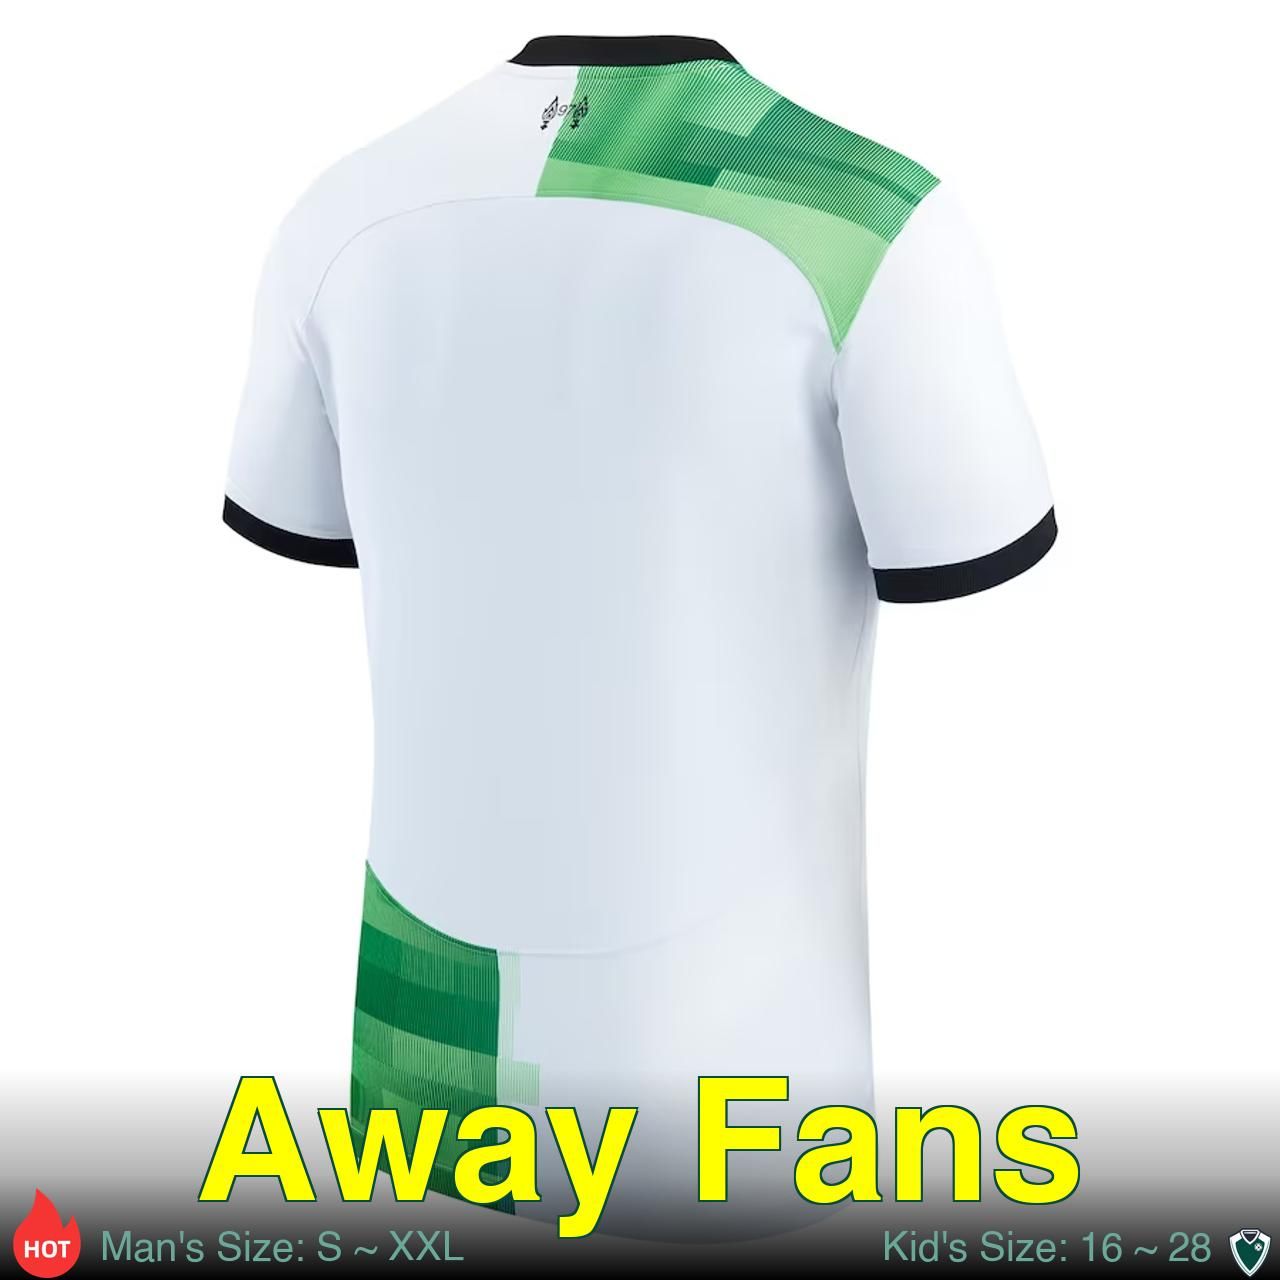 Away Fans